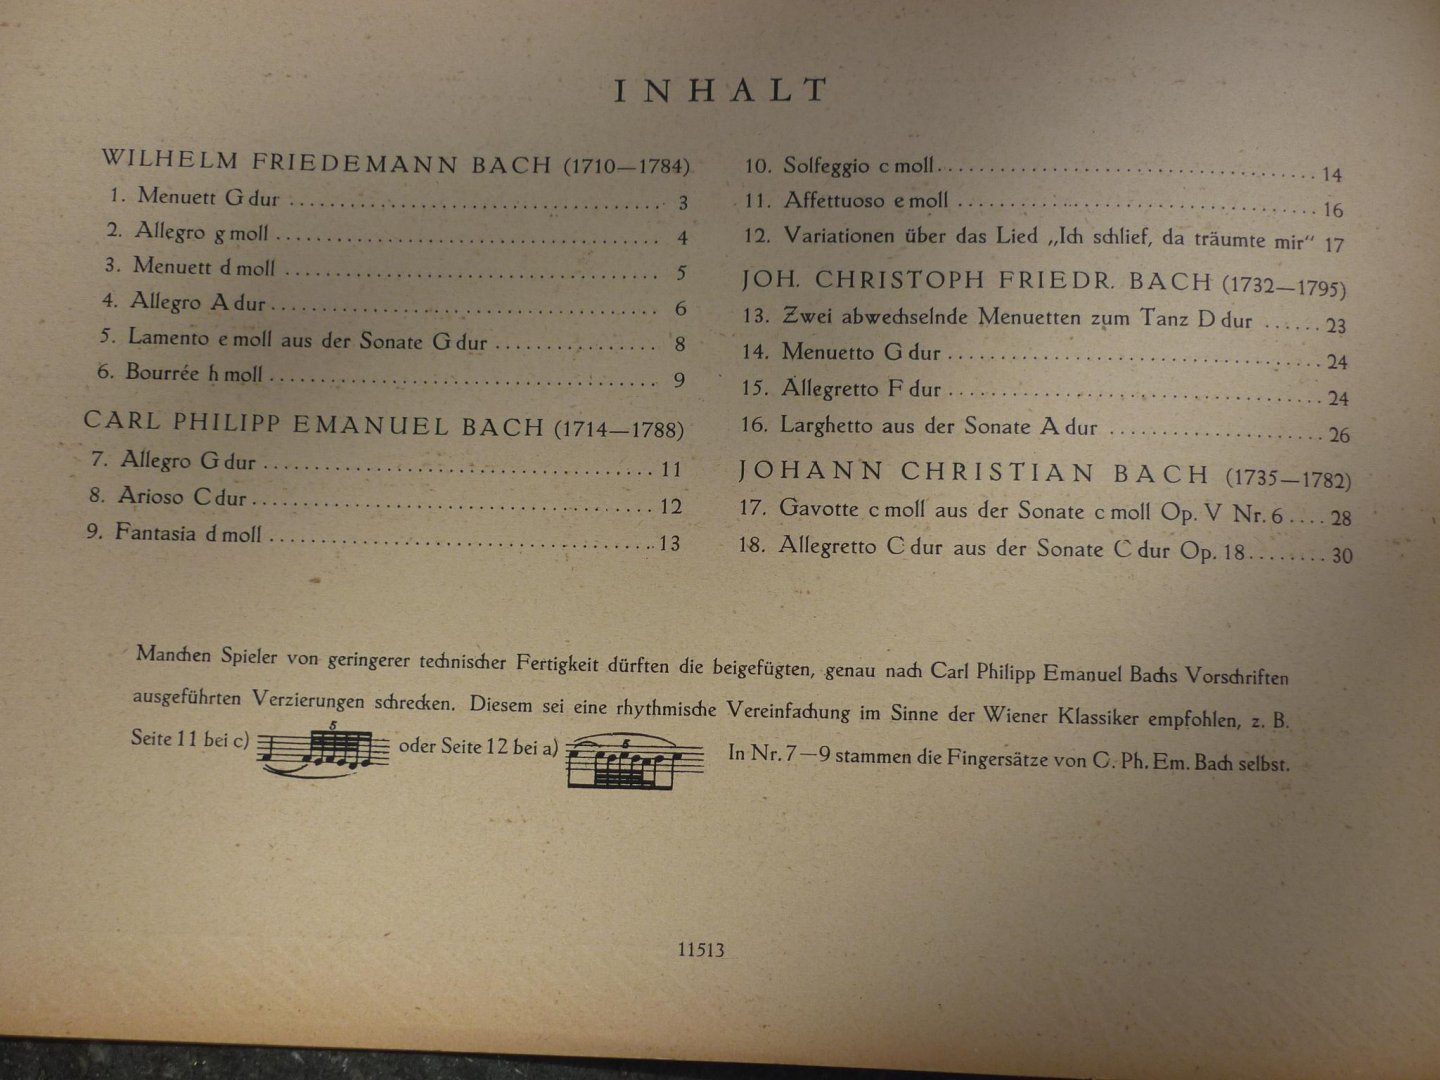 Soldan; Kurt - herausgegeben von; Fingersatze von Julius Dahlke - Bachs sohne; Leichte Klavierstucke Kurt Soldan